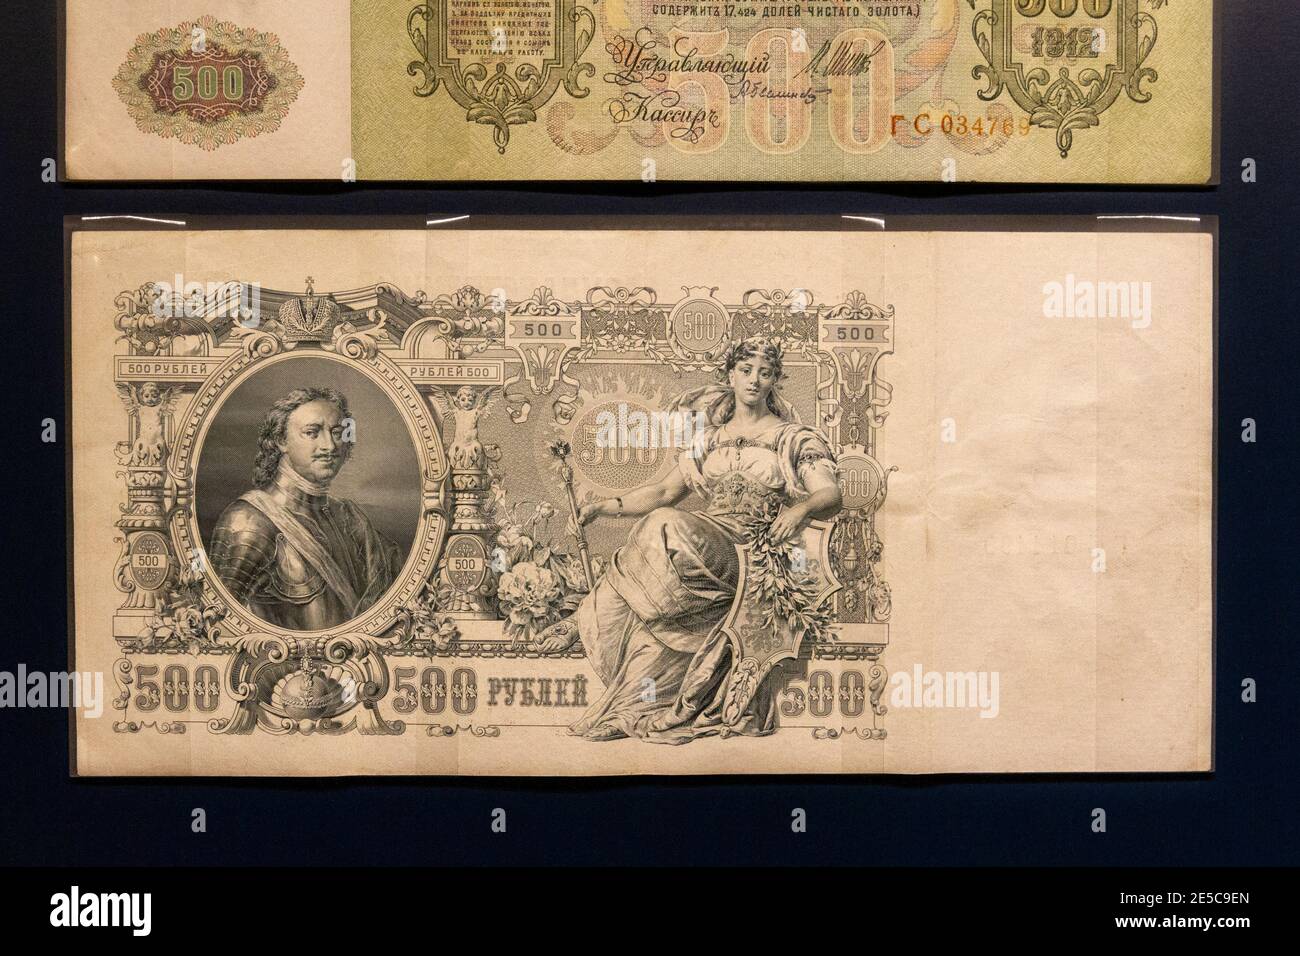 Retro di una banconota da 500 rubli dalla Russia (1912) con il ritratto di Czar Peter the Great, The Money Gallery, Ashmolean Museum, Oxford, UK. Foto Stock